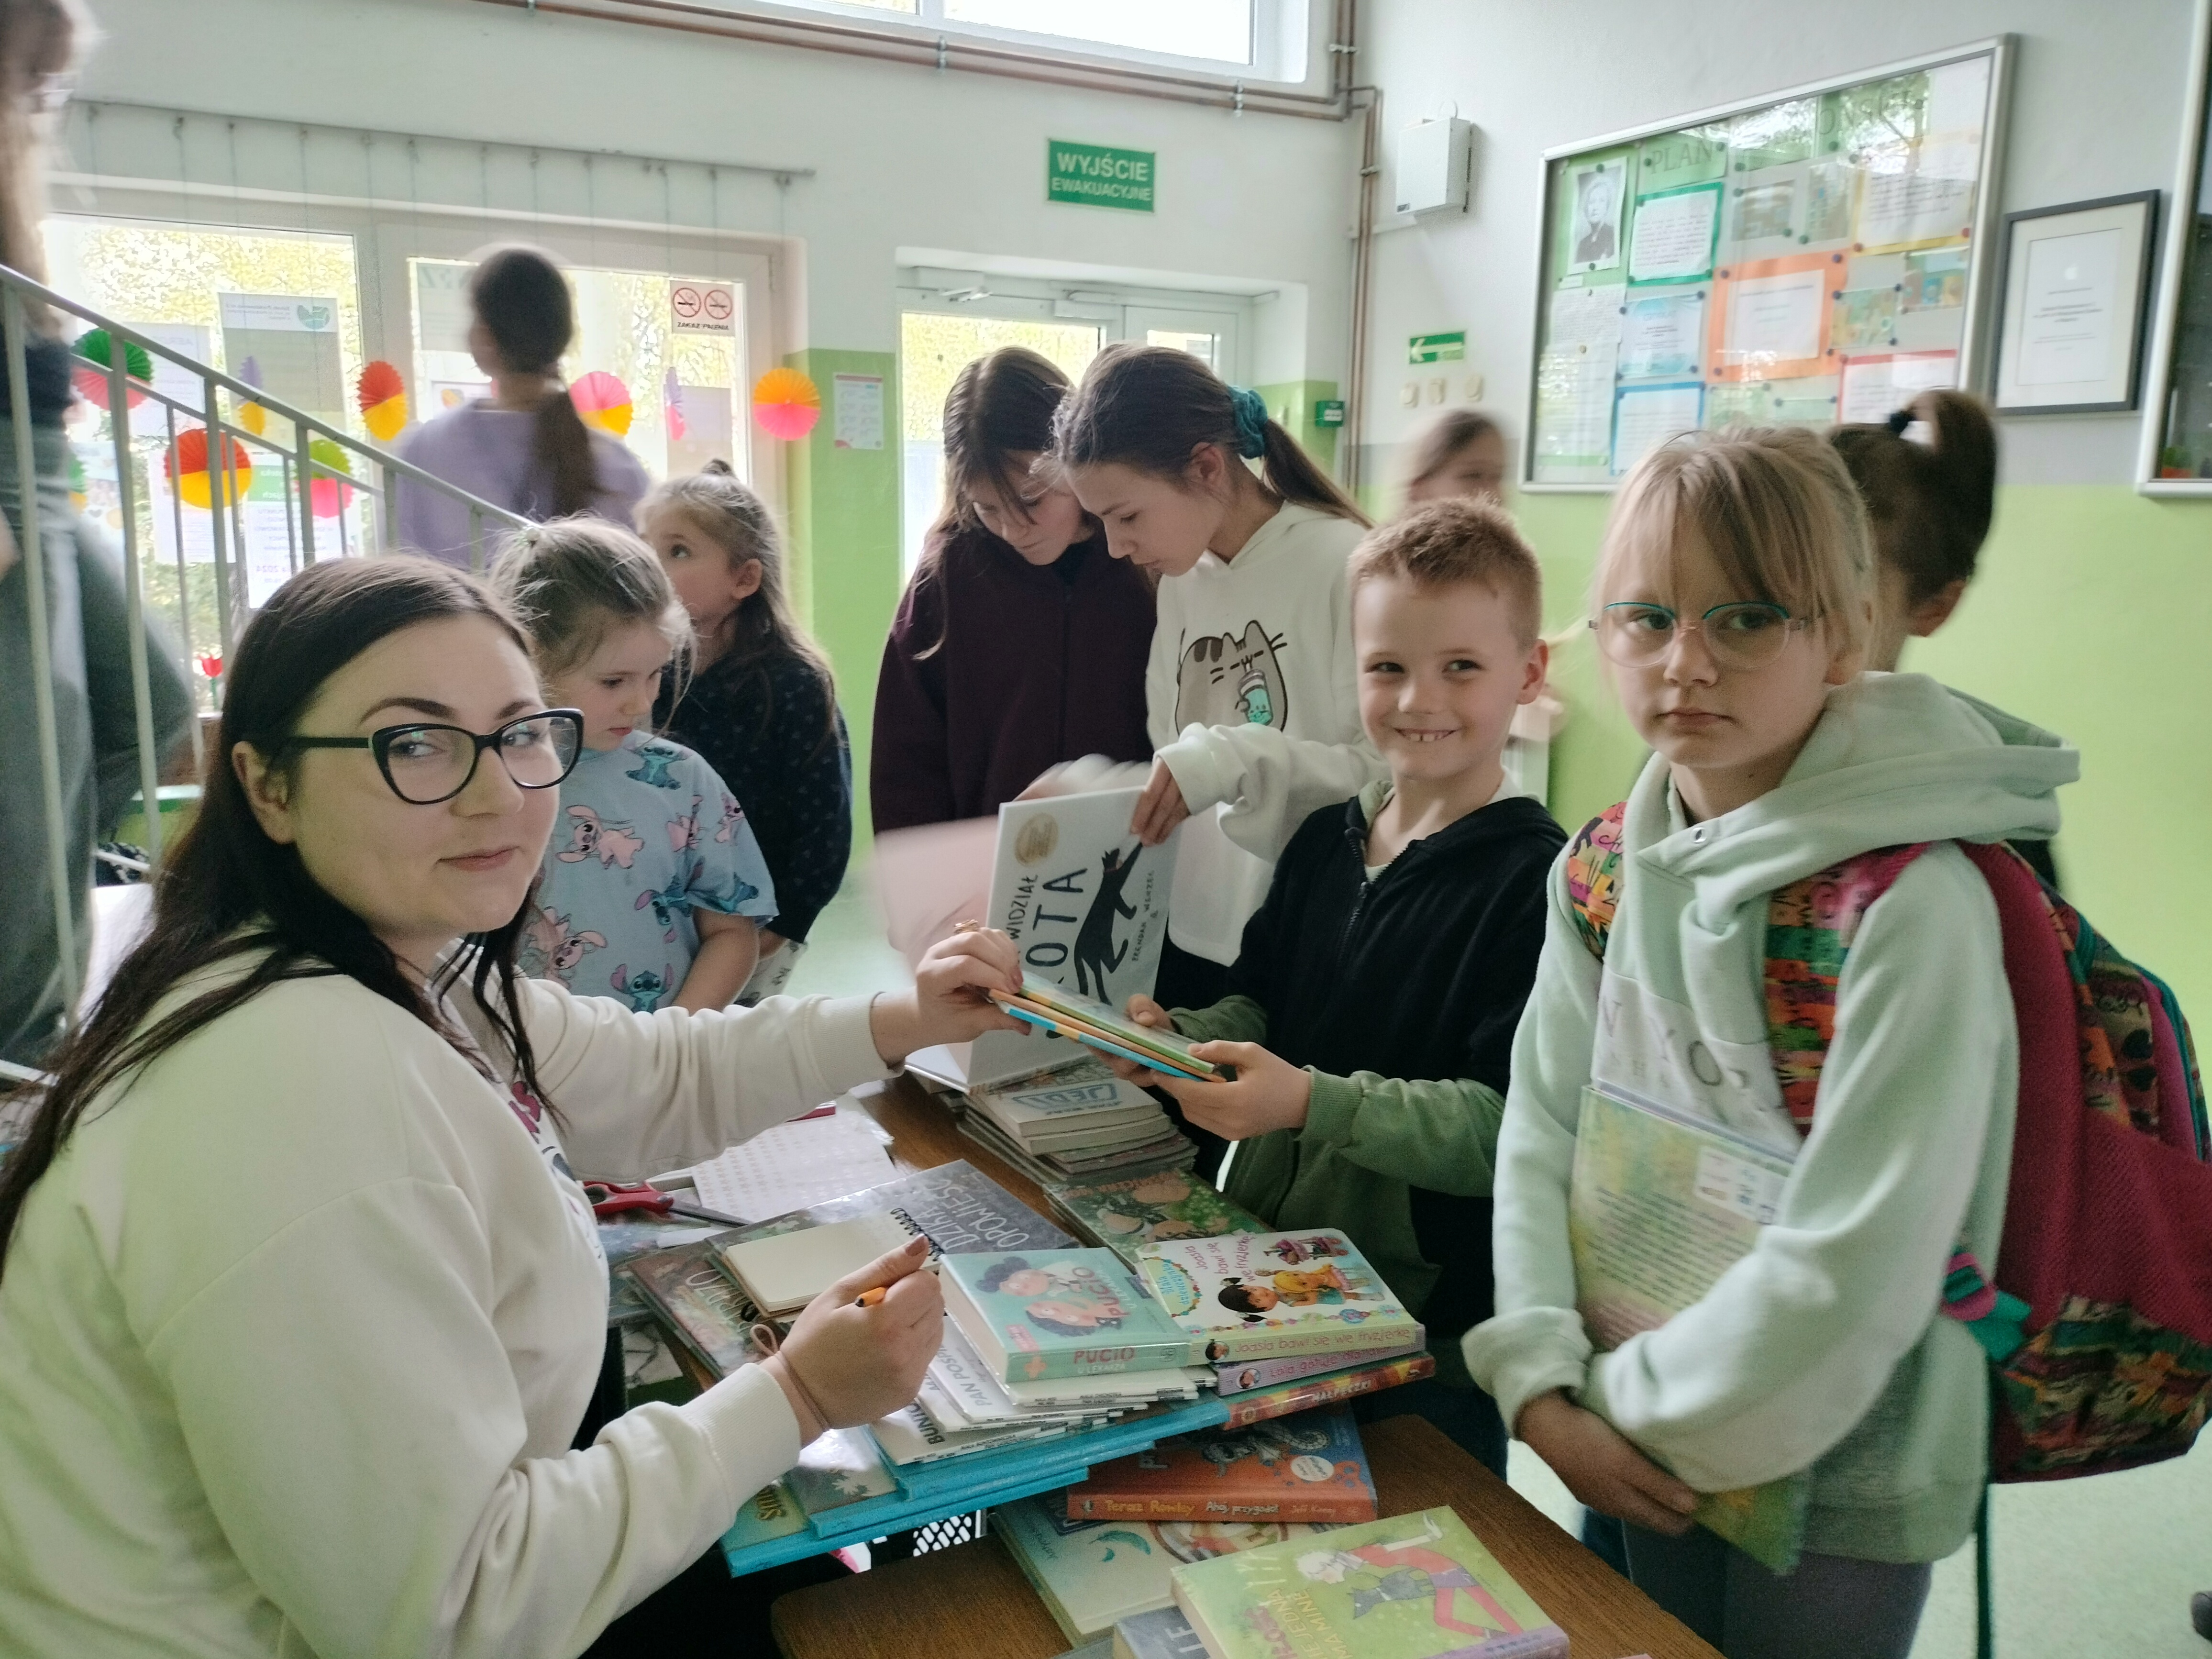 Punkt biblioteczny w Szkole Podstawowej nr 2 w Wapnicy - 17 kwietnia 2024 r.